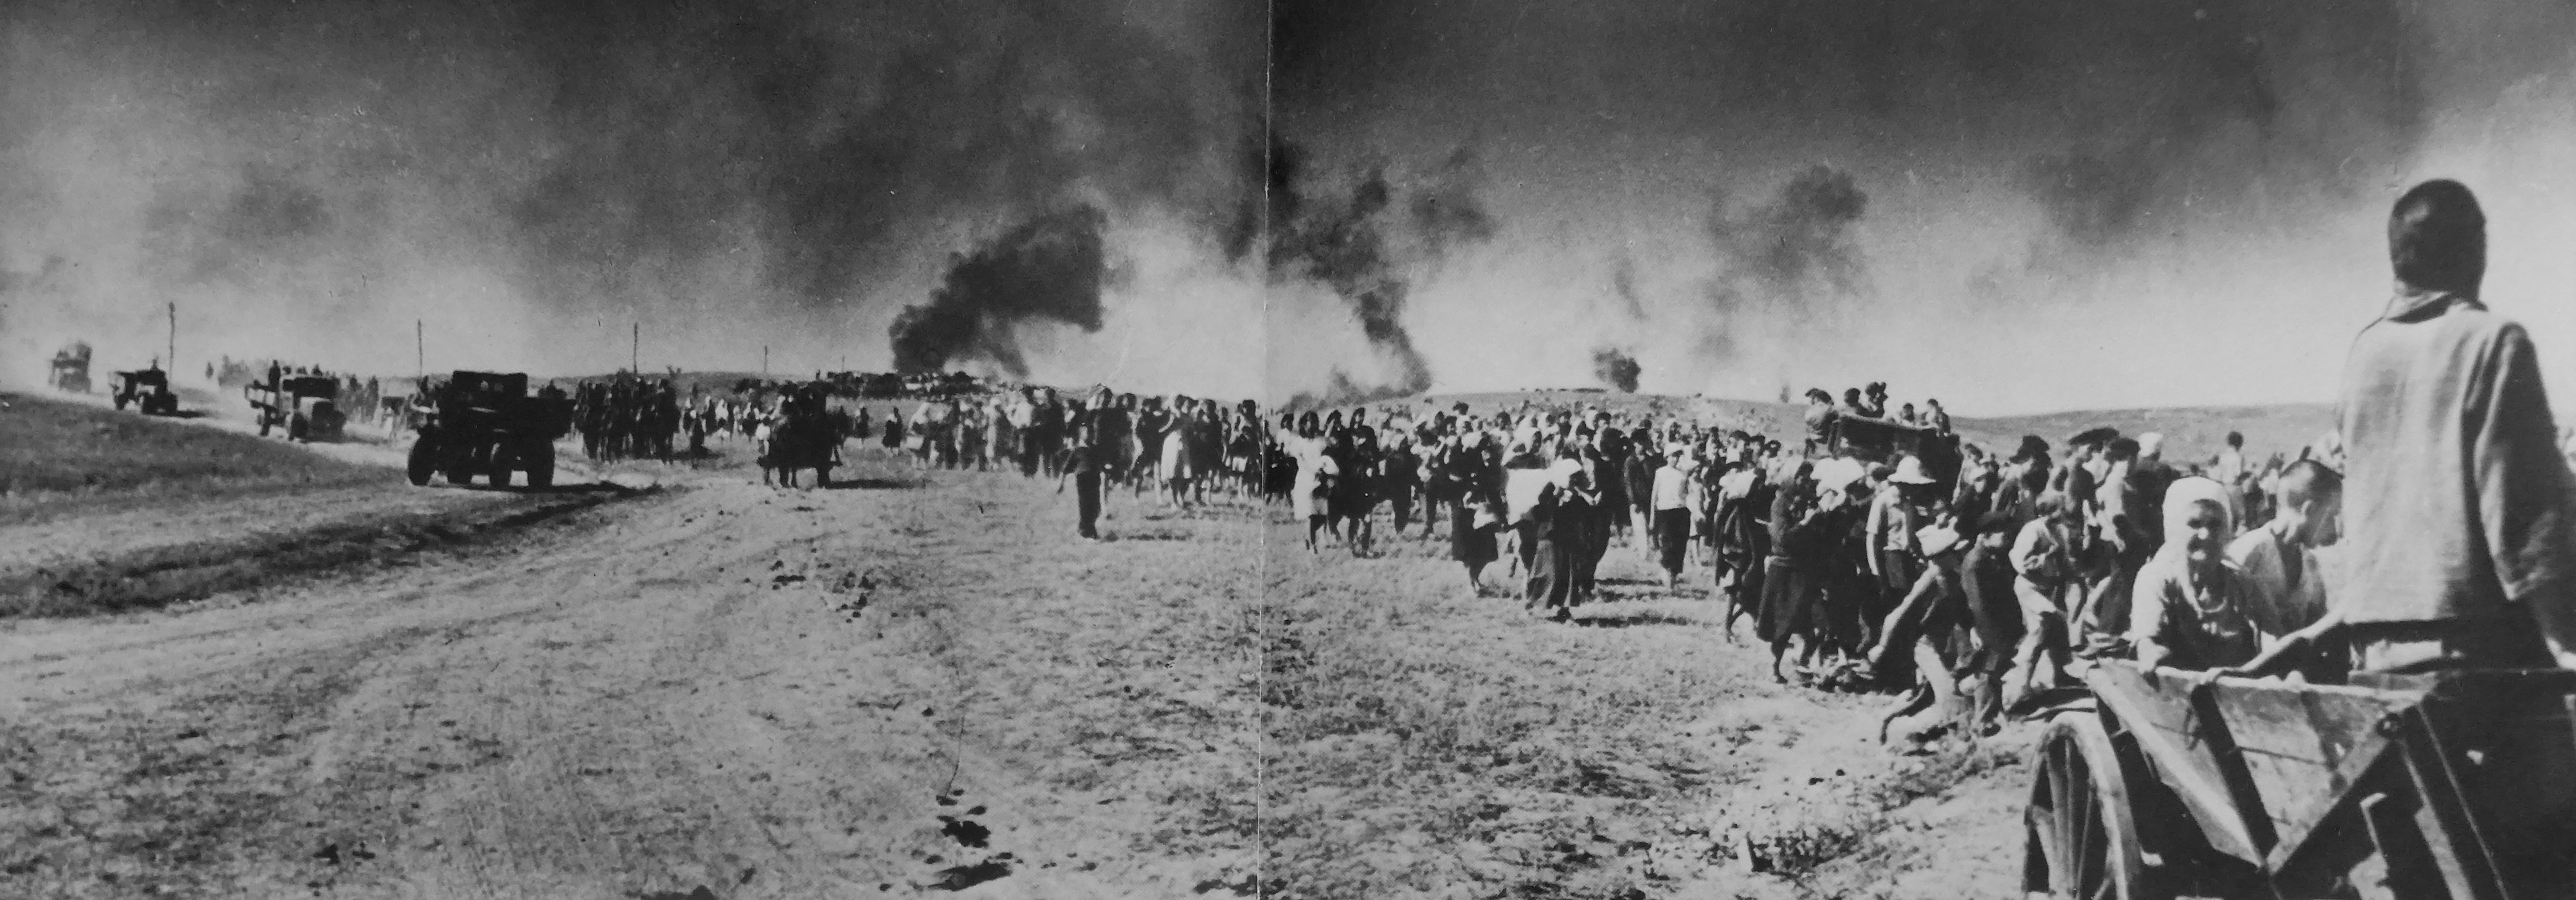 22 июня июль 1941 г. Беженцы в годы ВОВ 1941-1945г.г. Беженцы в первые дни войны 1941-1945.